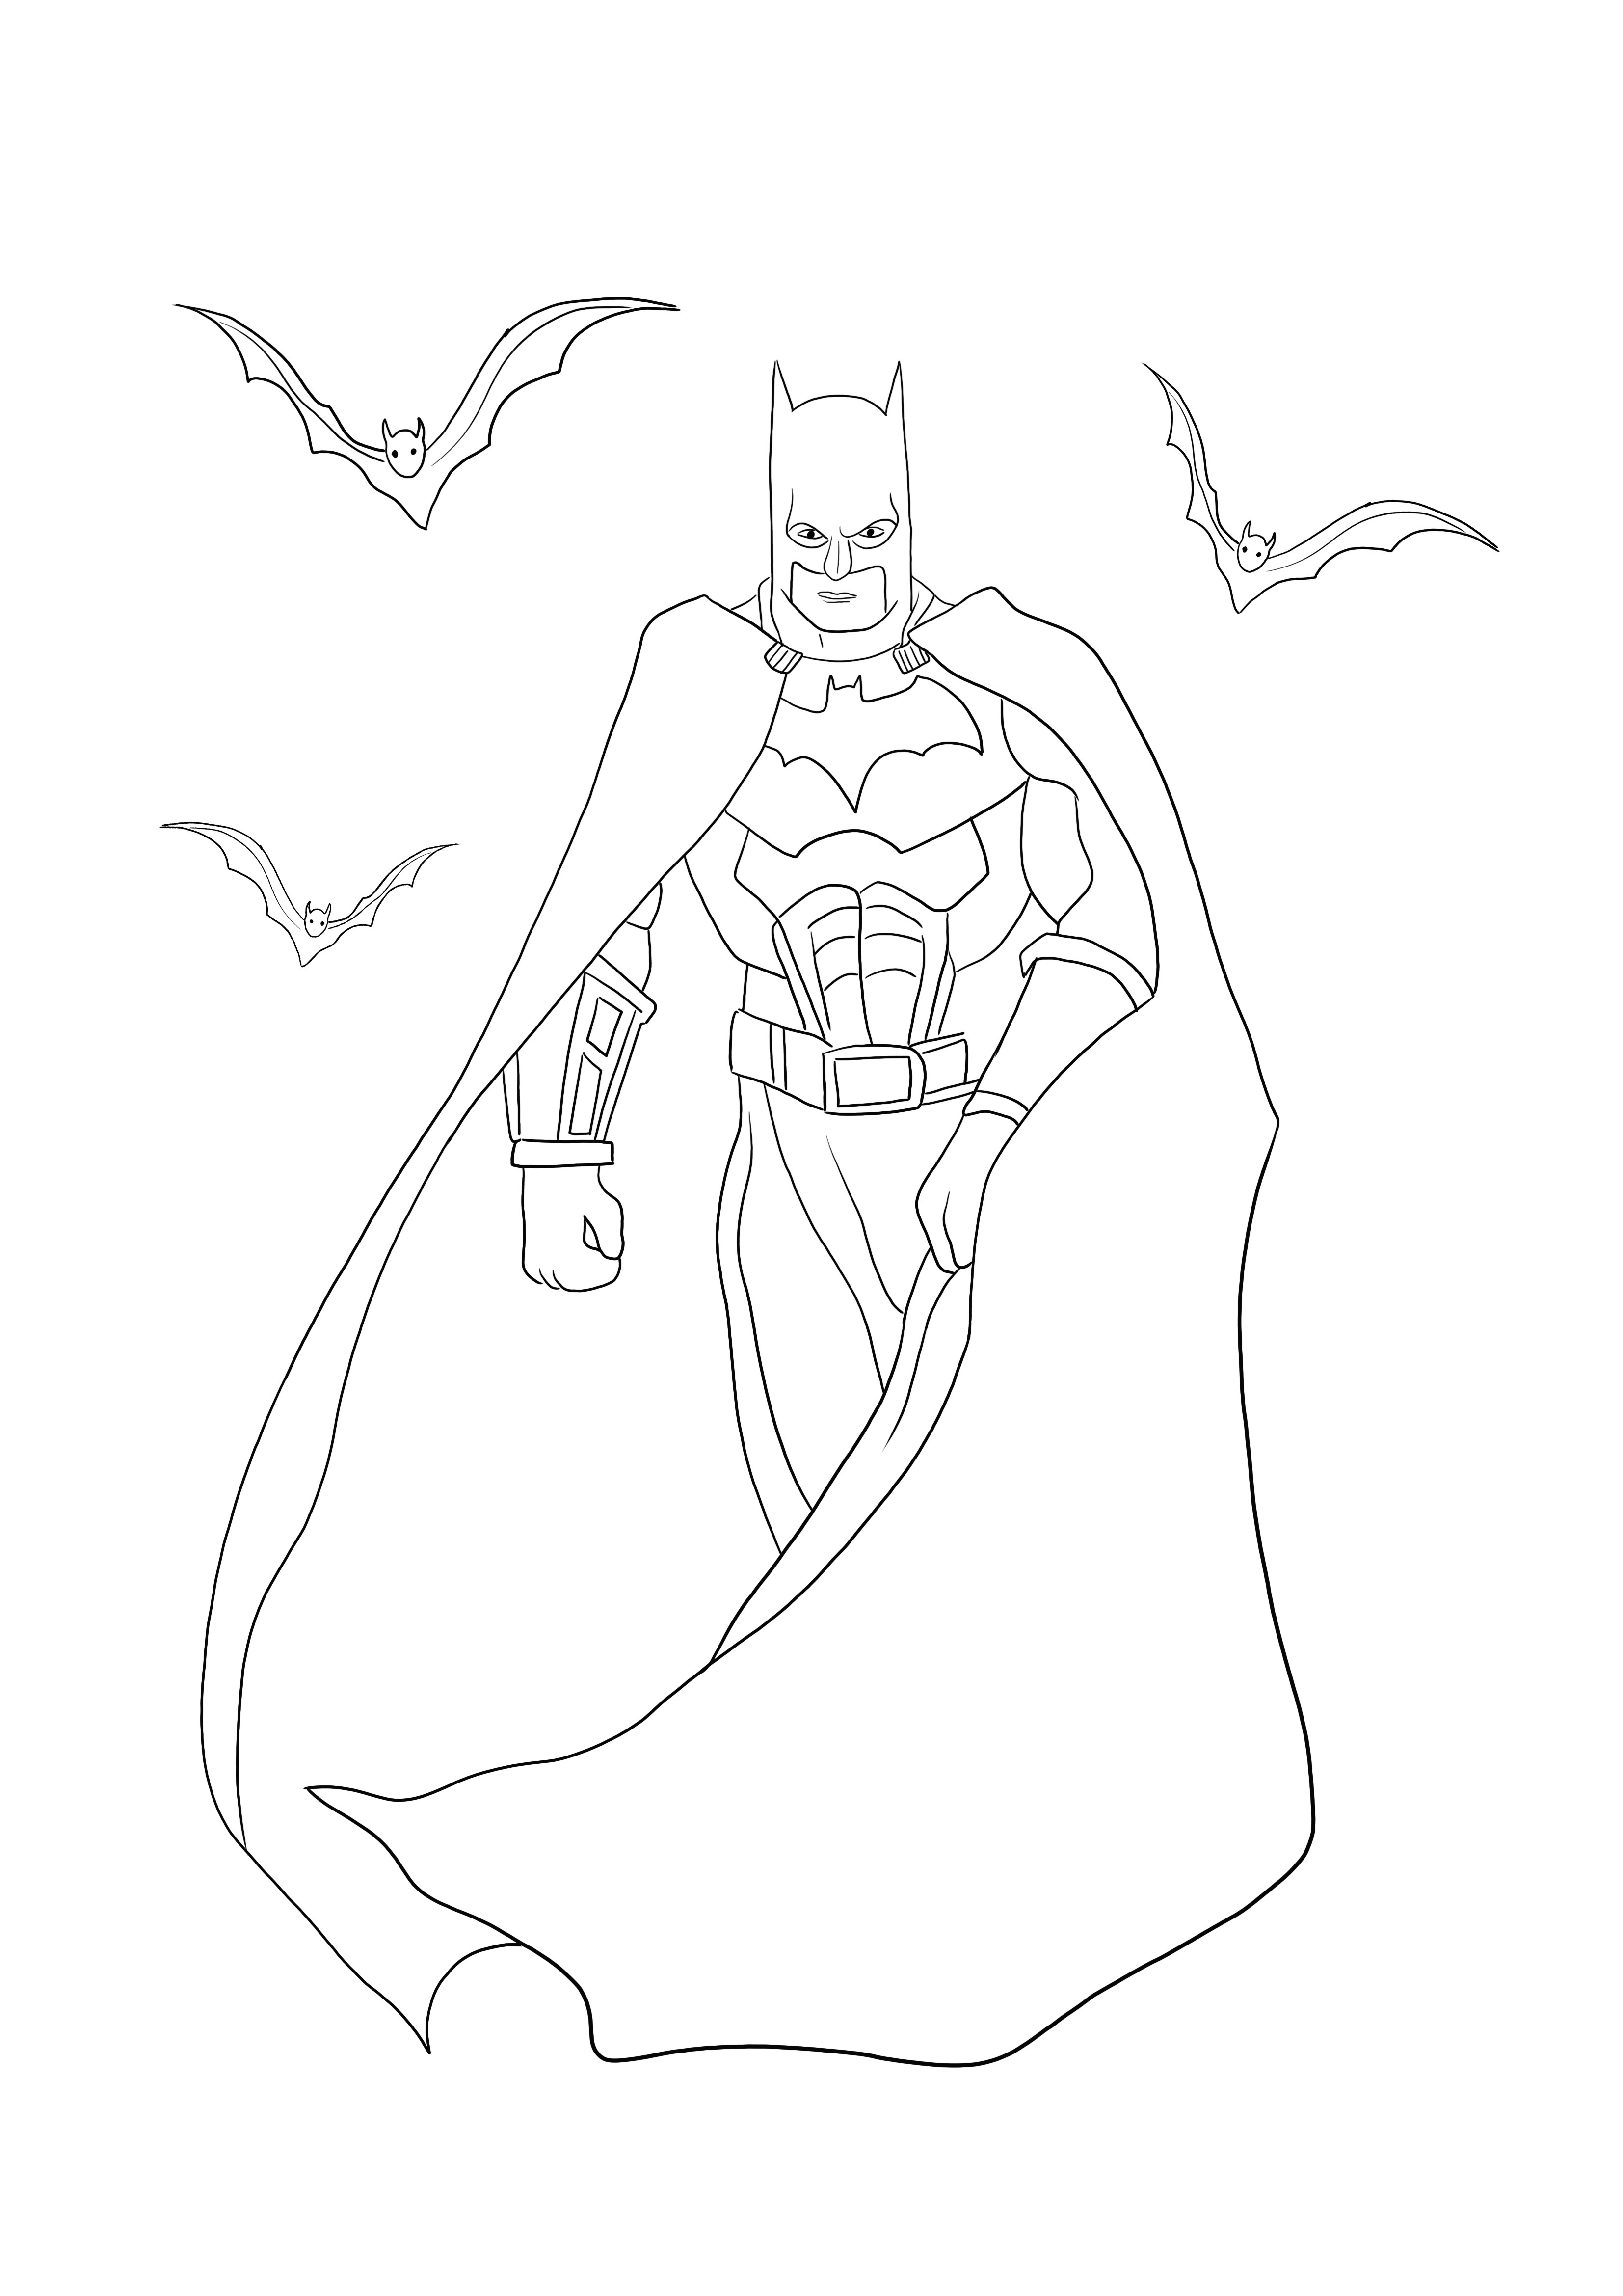 Kolorowanka Batman z nietoperzami jest do pobrania lub wydrukowania za darmo, aby dobrze się bawić